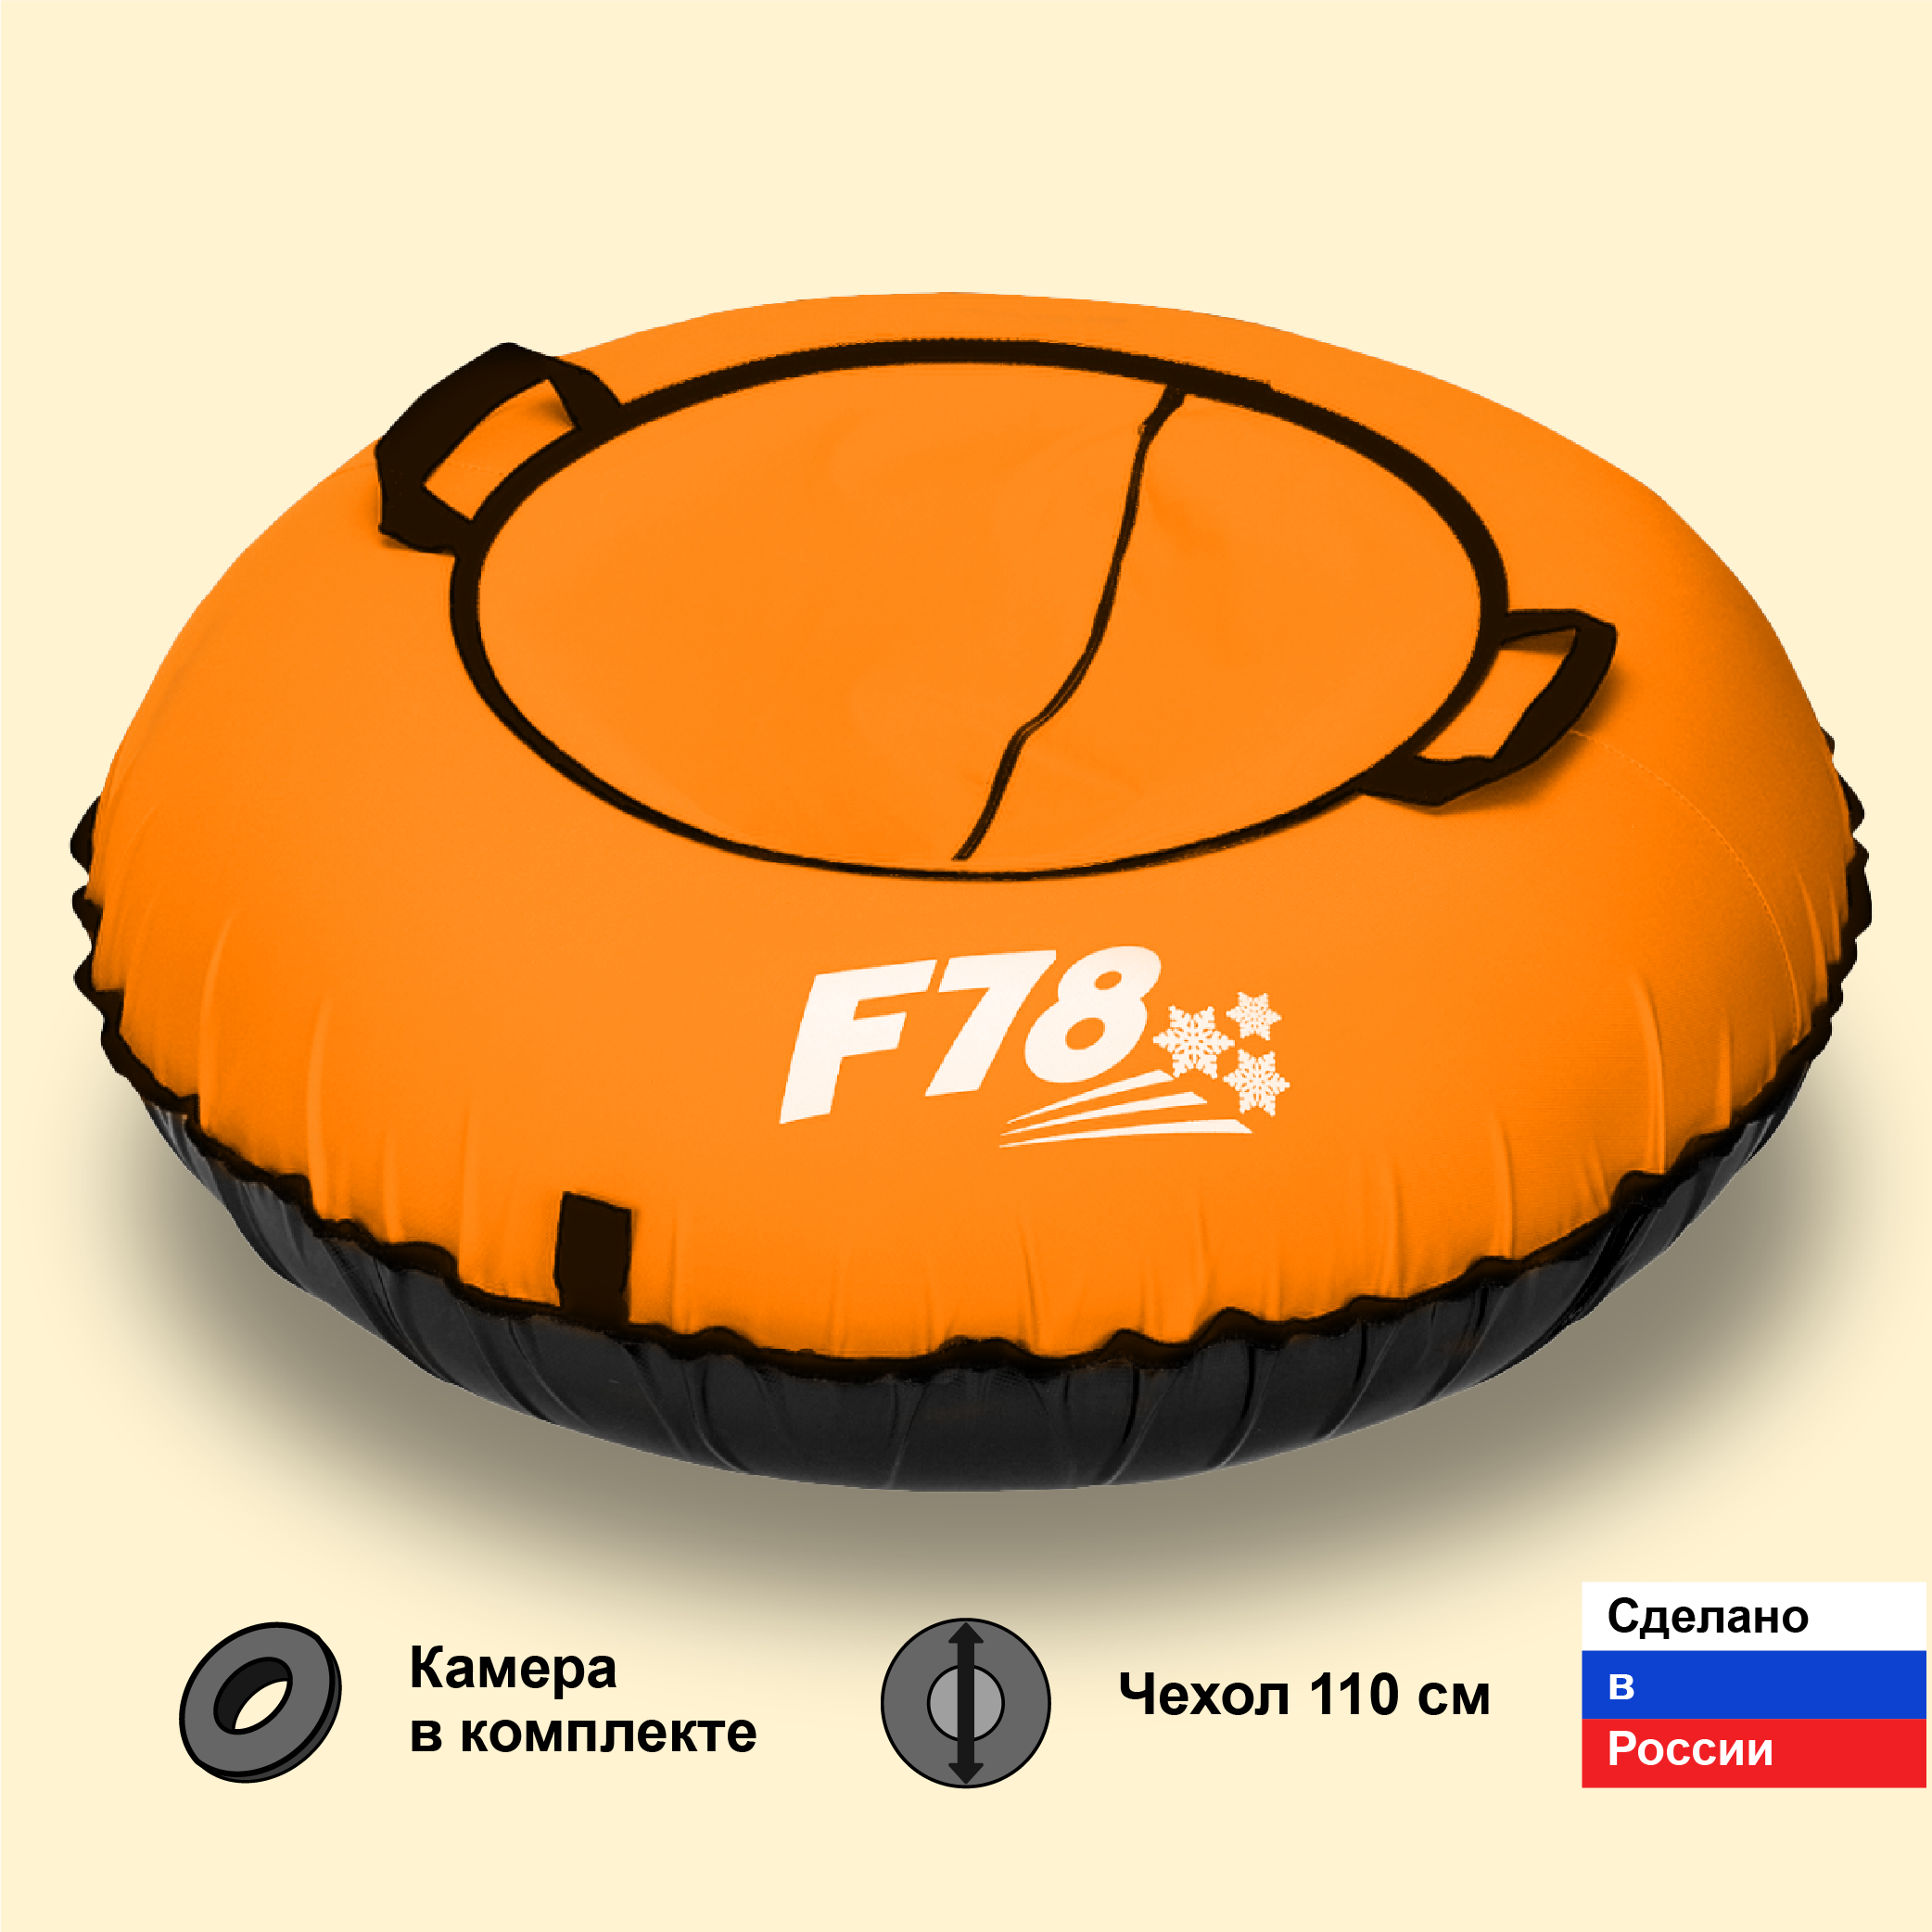 Тюбинг ватрушка F78 оранжевая 110 см, с камерой